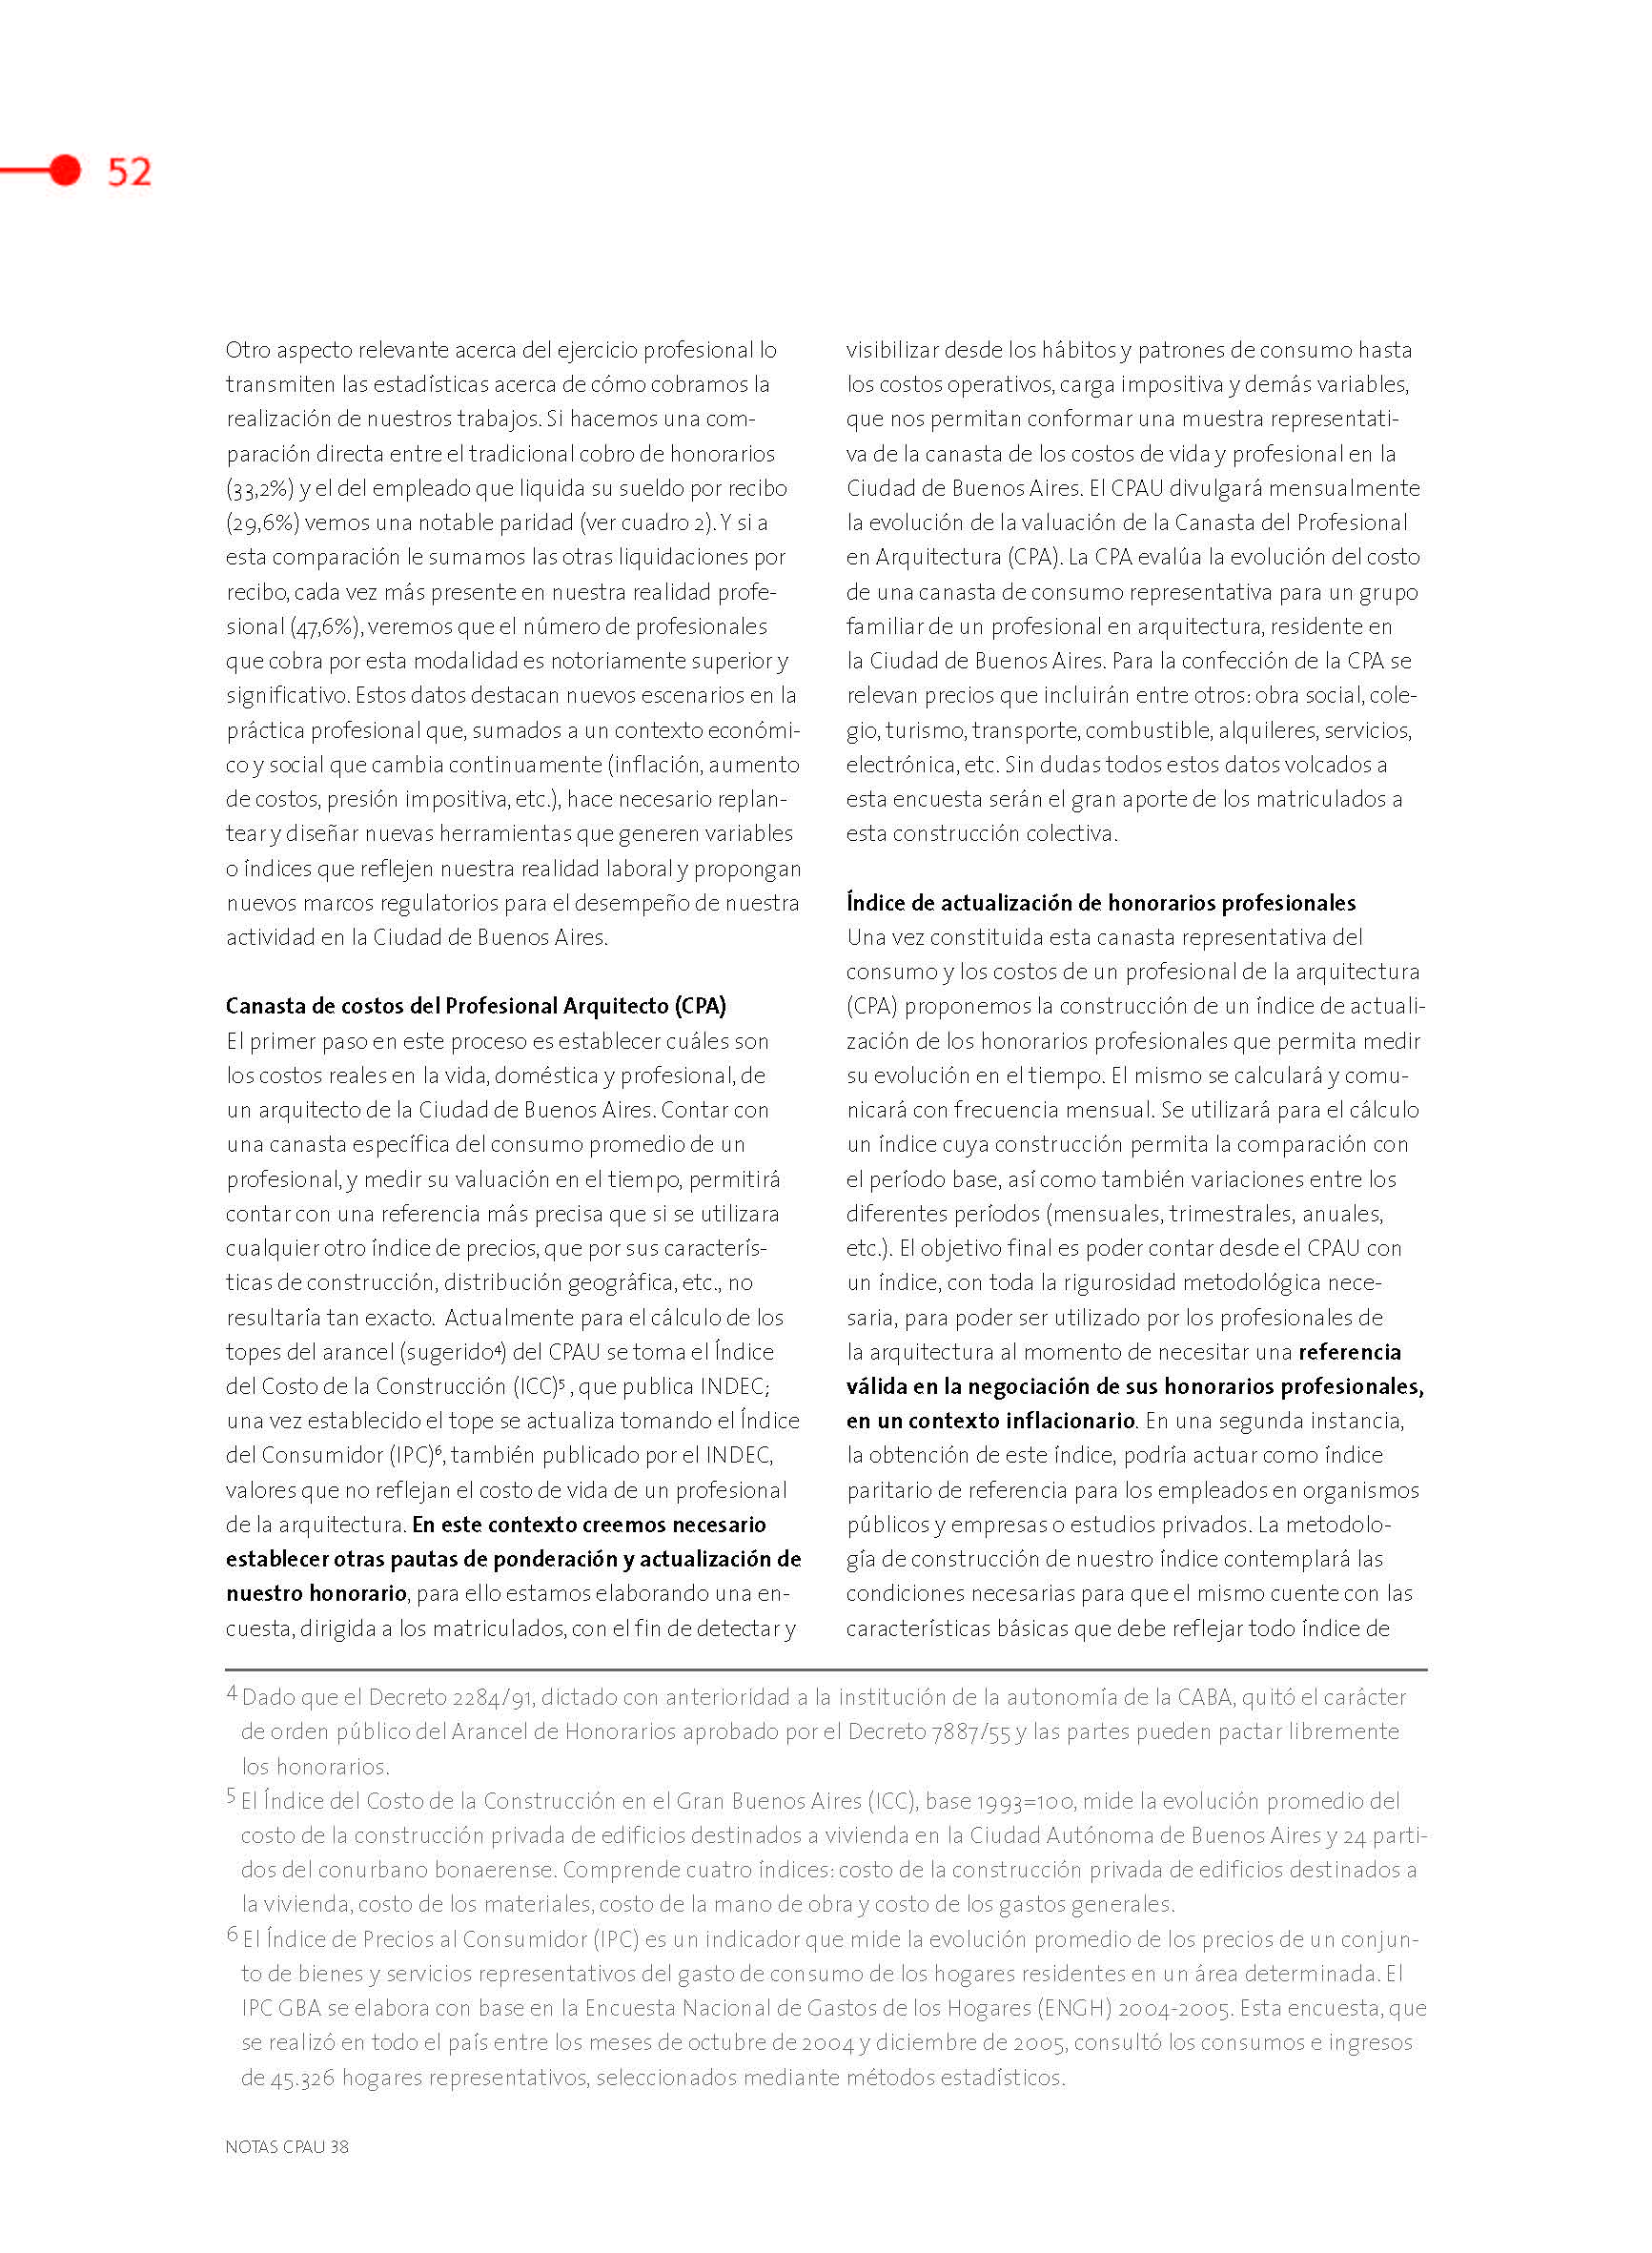 publication-1_Página_54